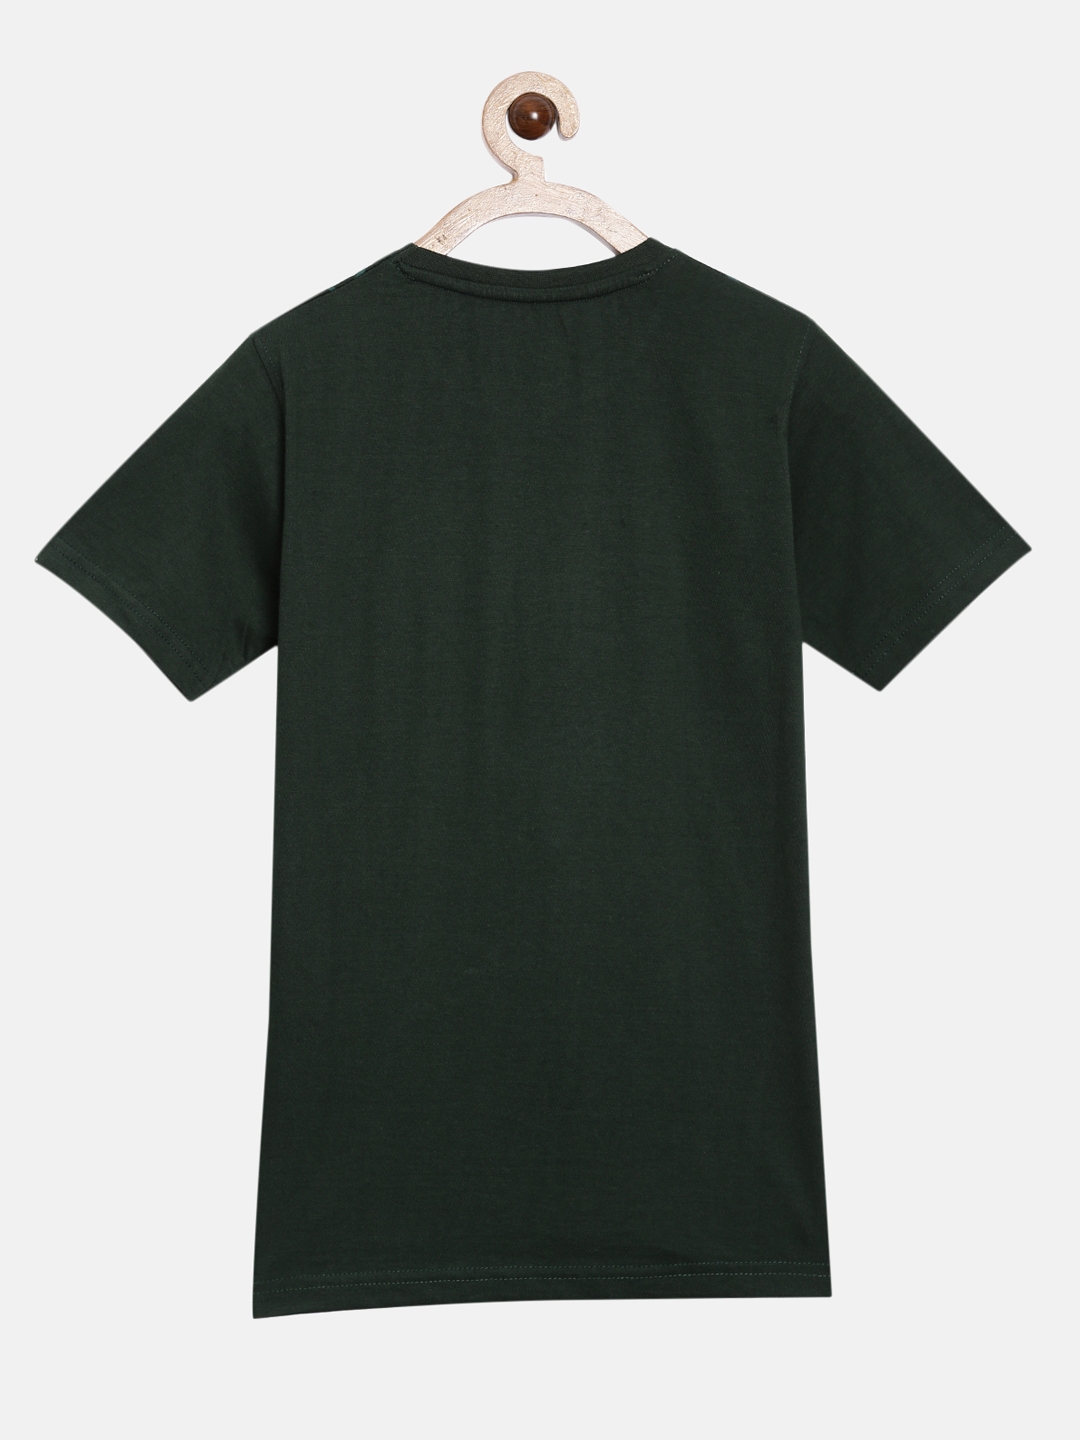 Peejas | Peejas Kids Boys 100% Cotton Printed Casual Tshirt 3